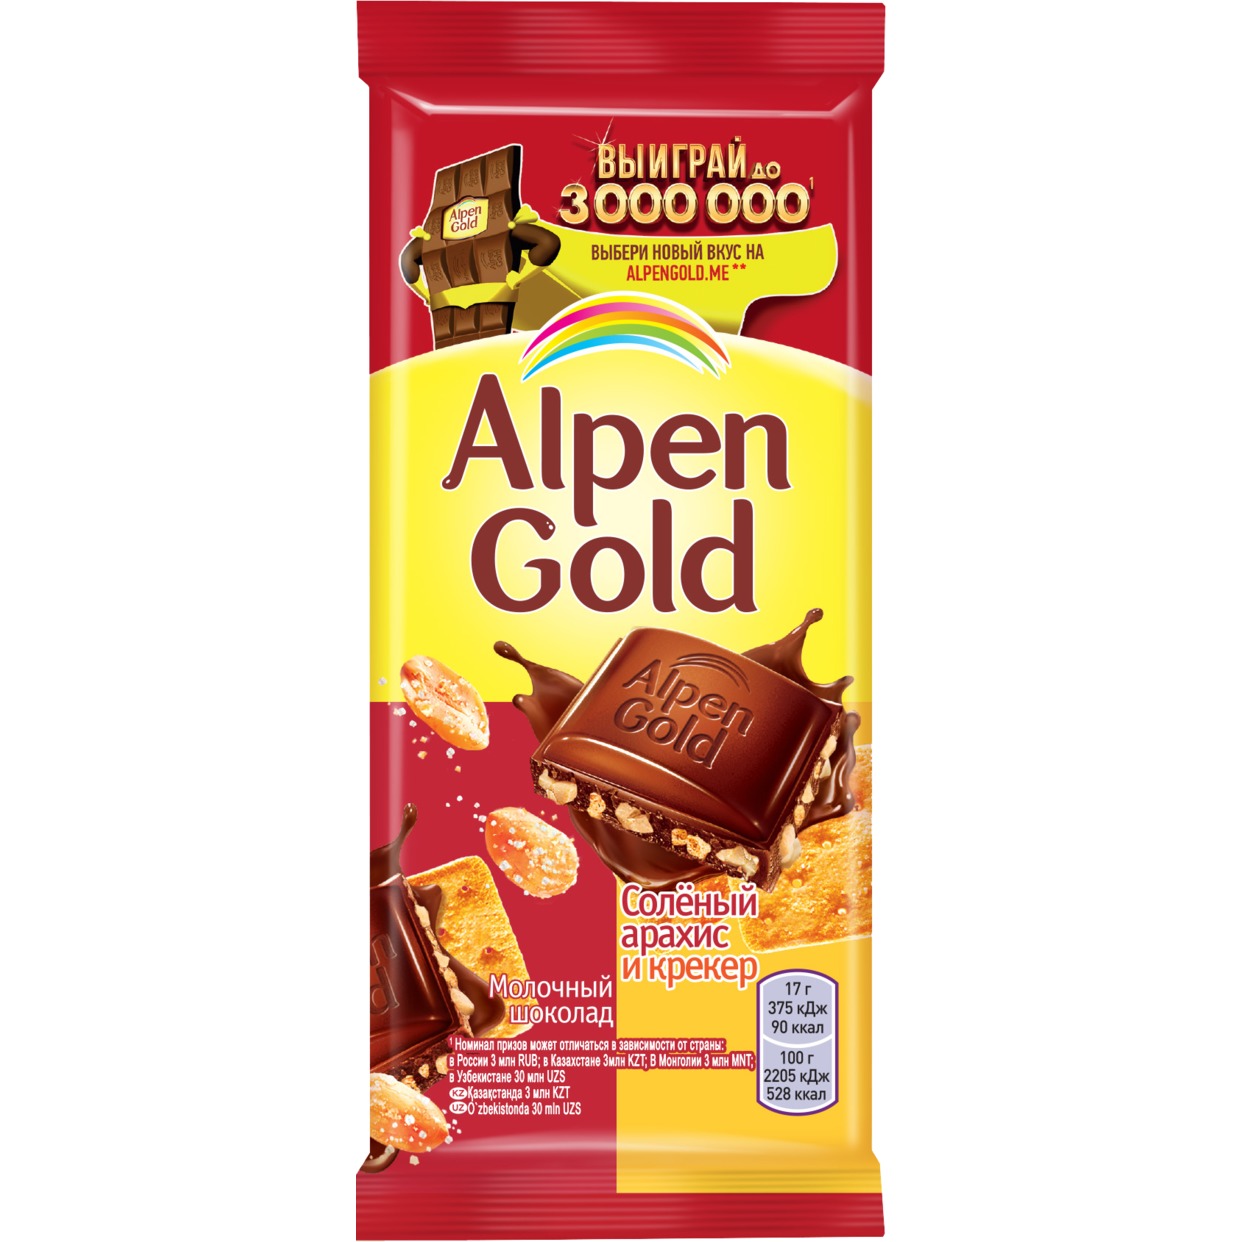 Шоколад молочный Alpen Gold Альпен Гольд с солёным арахисом и крекером, 85г по акции в Пятерочке